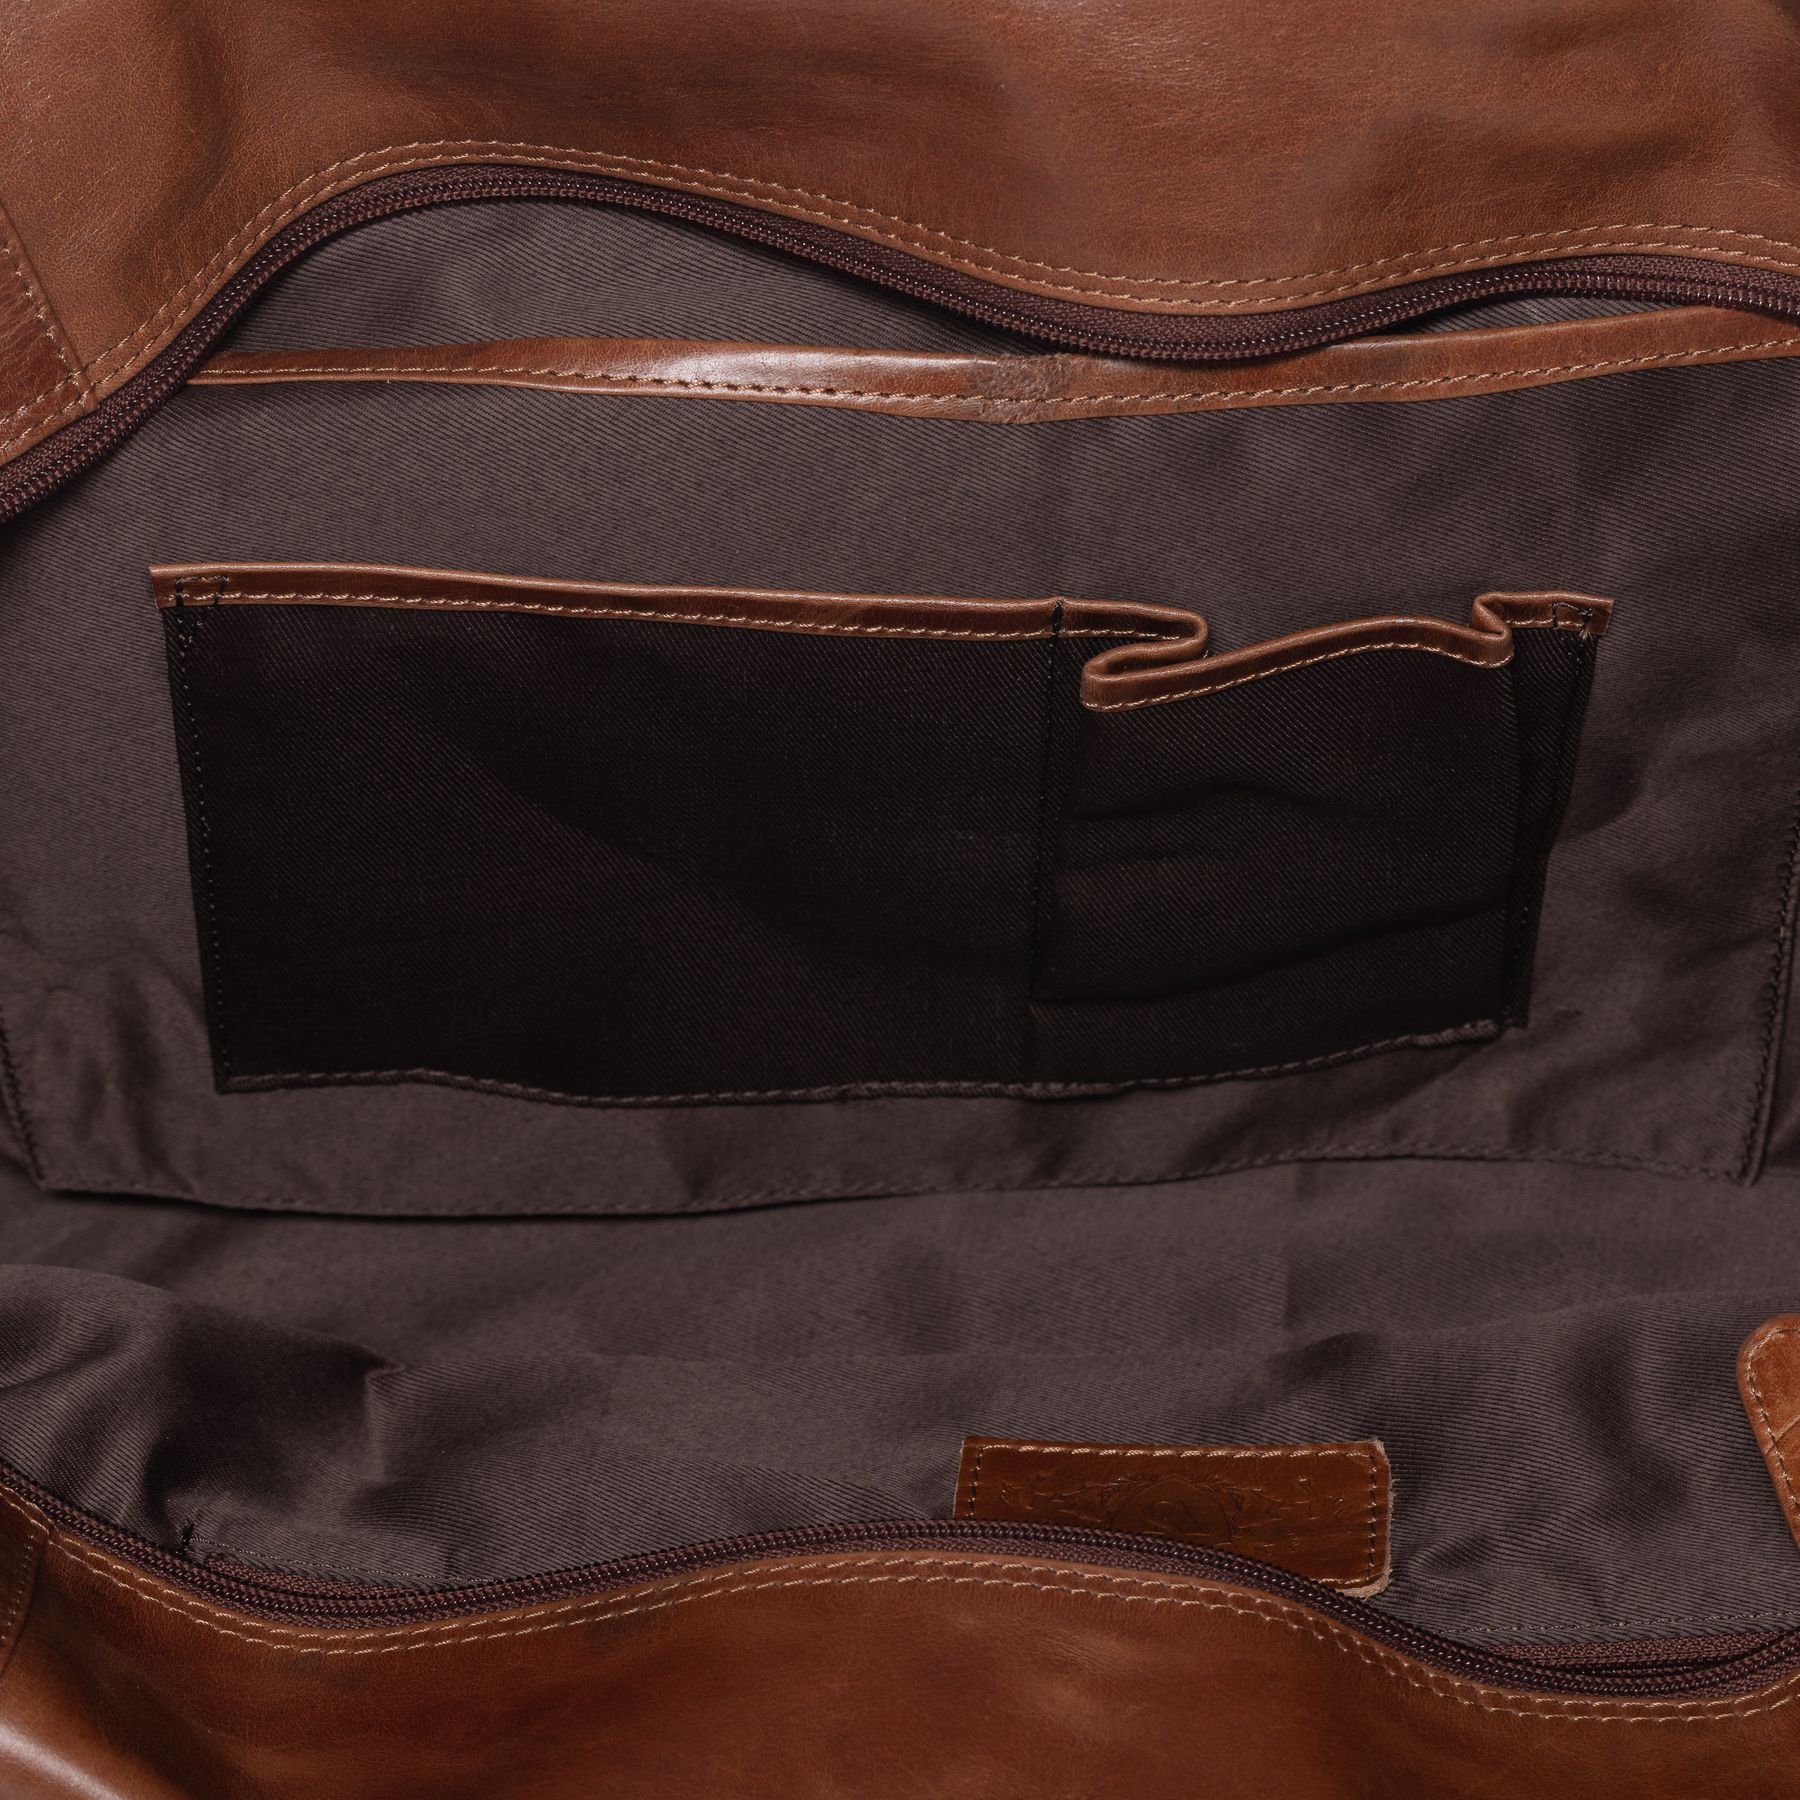 Travel bag BRISTOL natural leather light brown